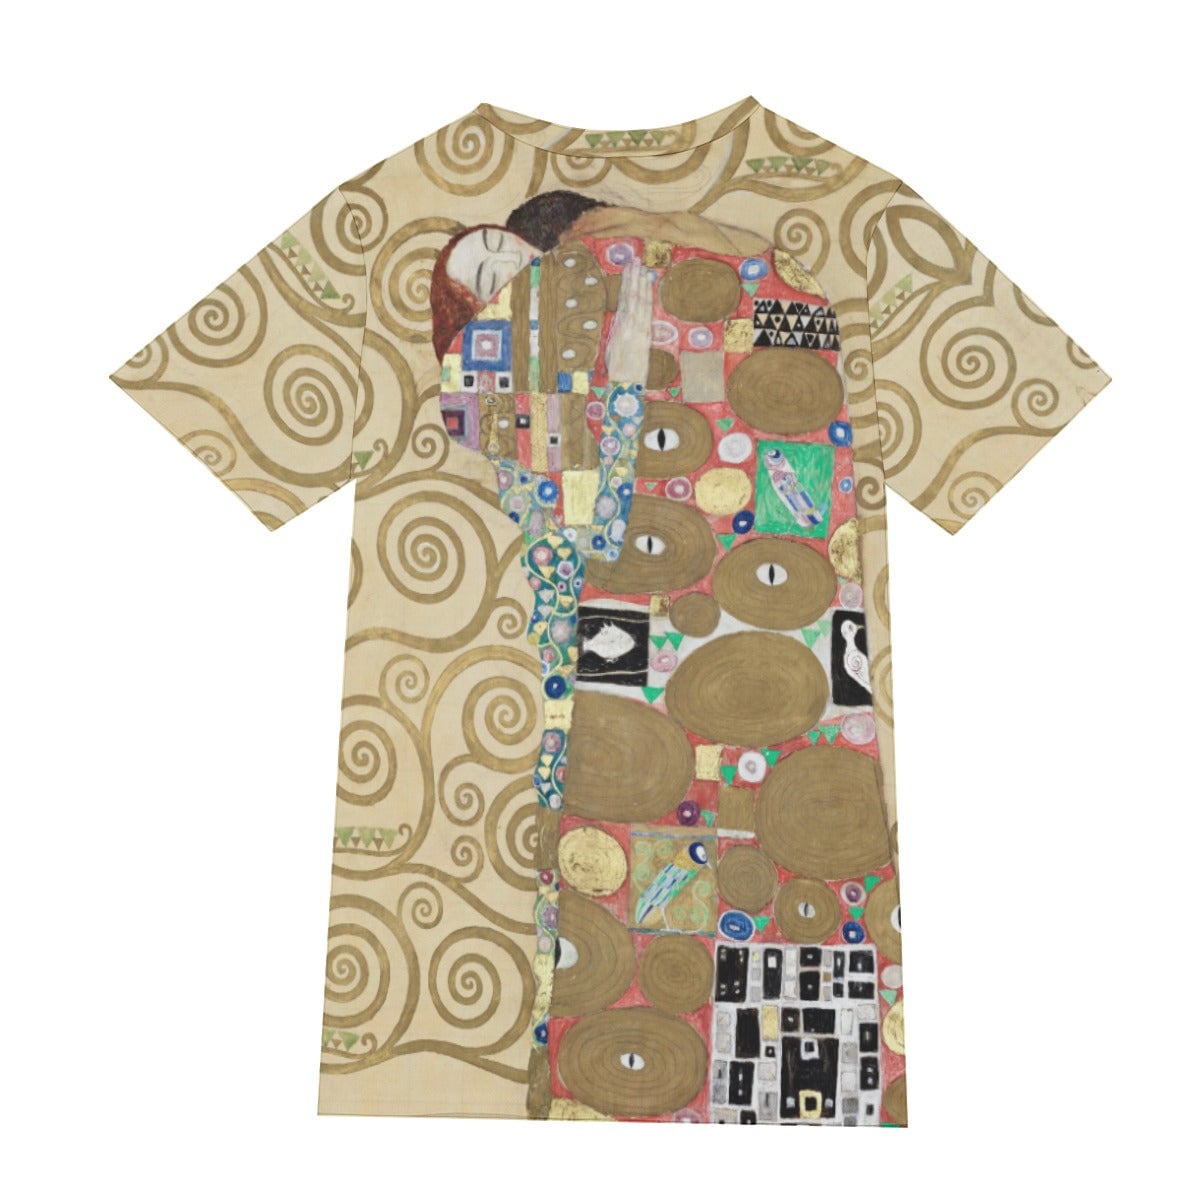 Fulfillment Gustav Klimt T-Shirt - Perfect for Art Lovers